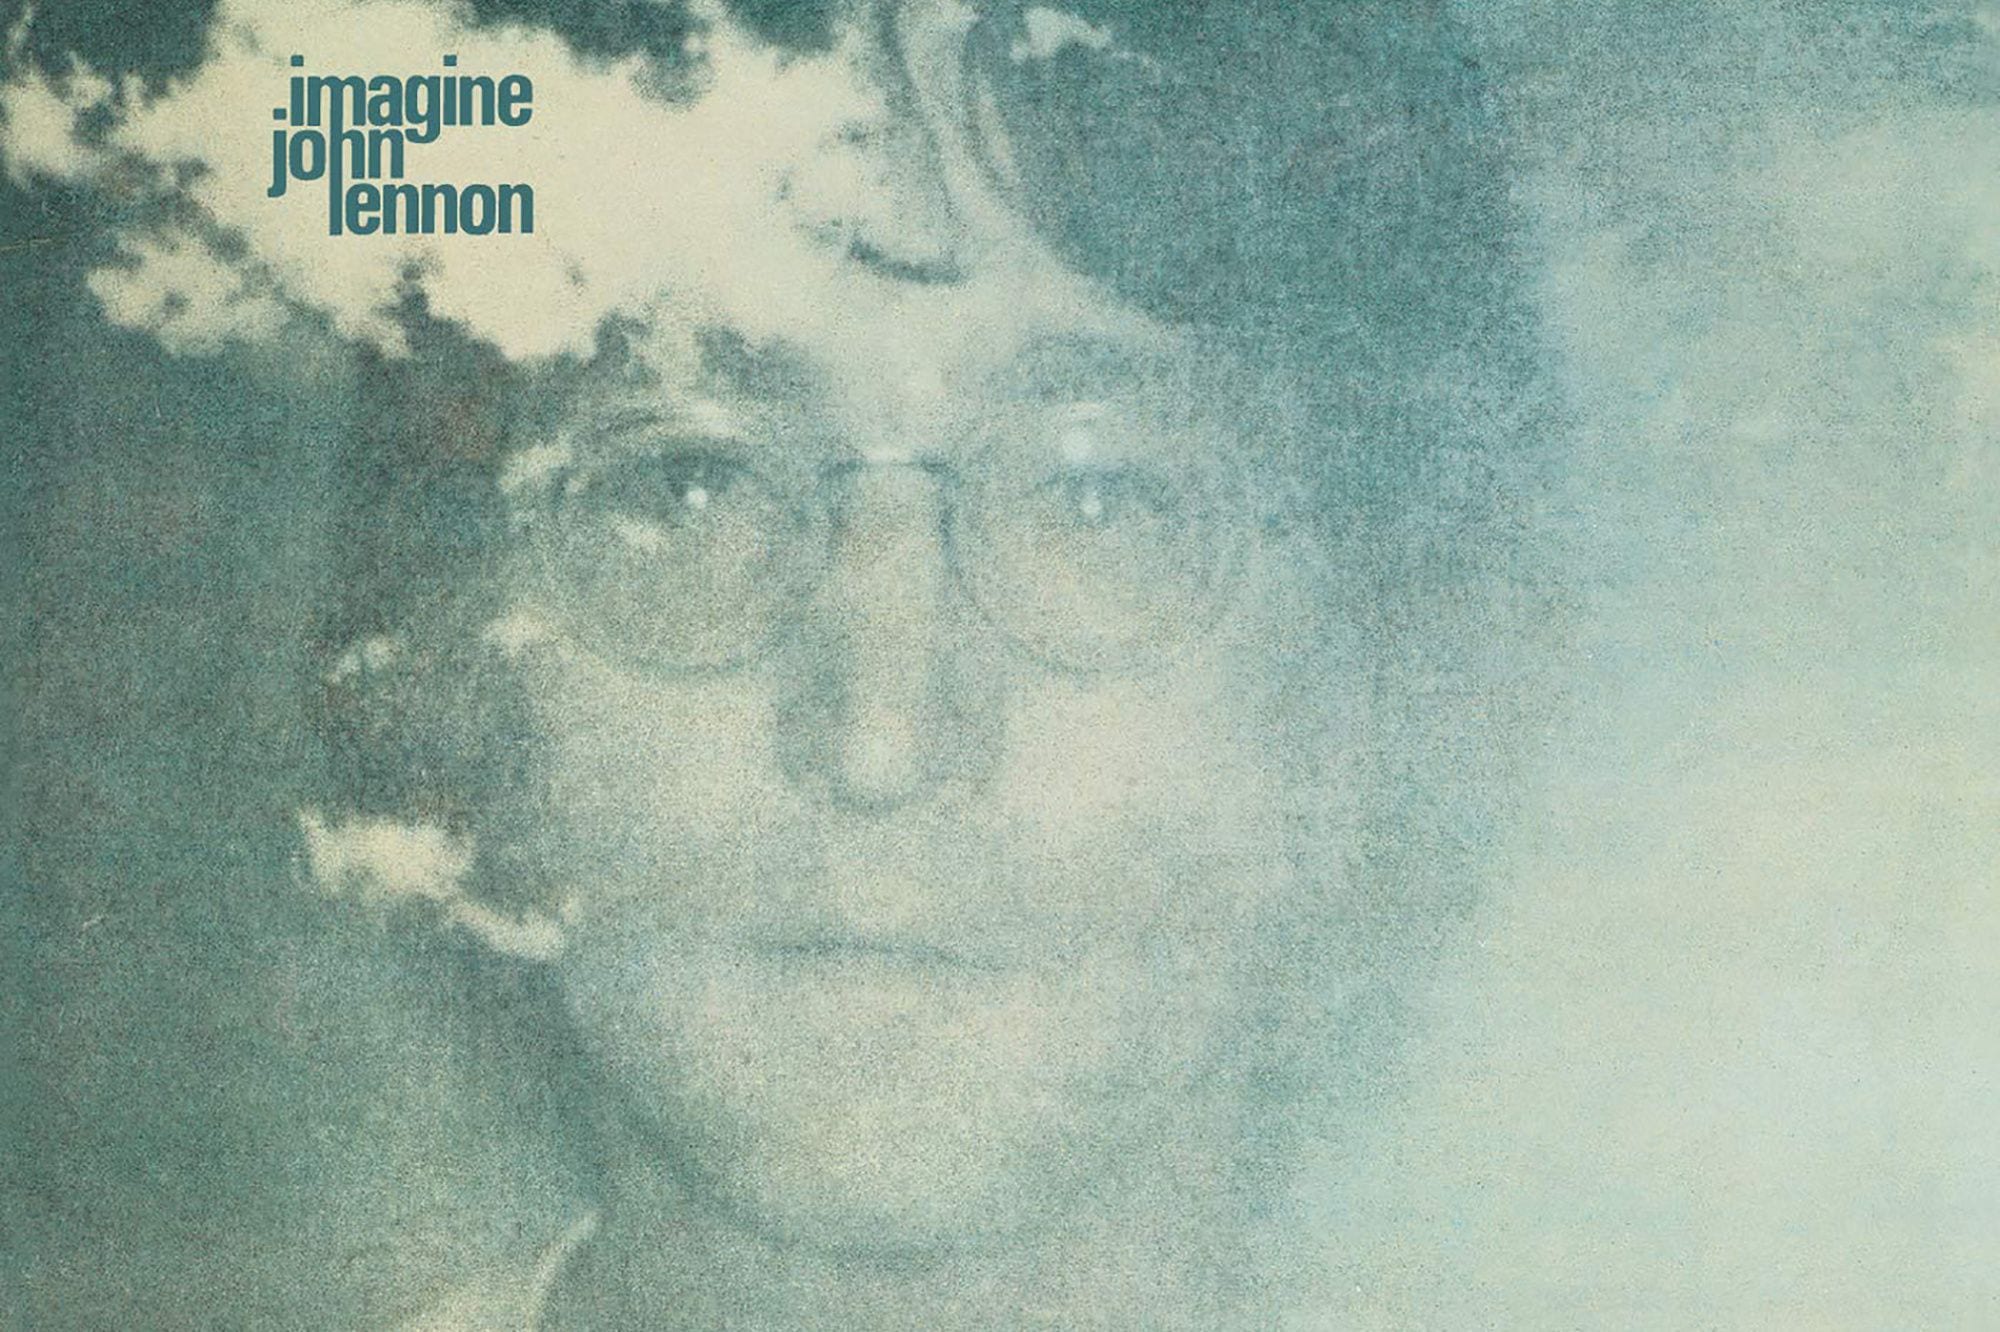 The Sentimental Journey of John Lennon’s “Imagine”